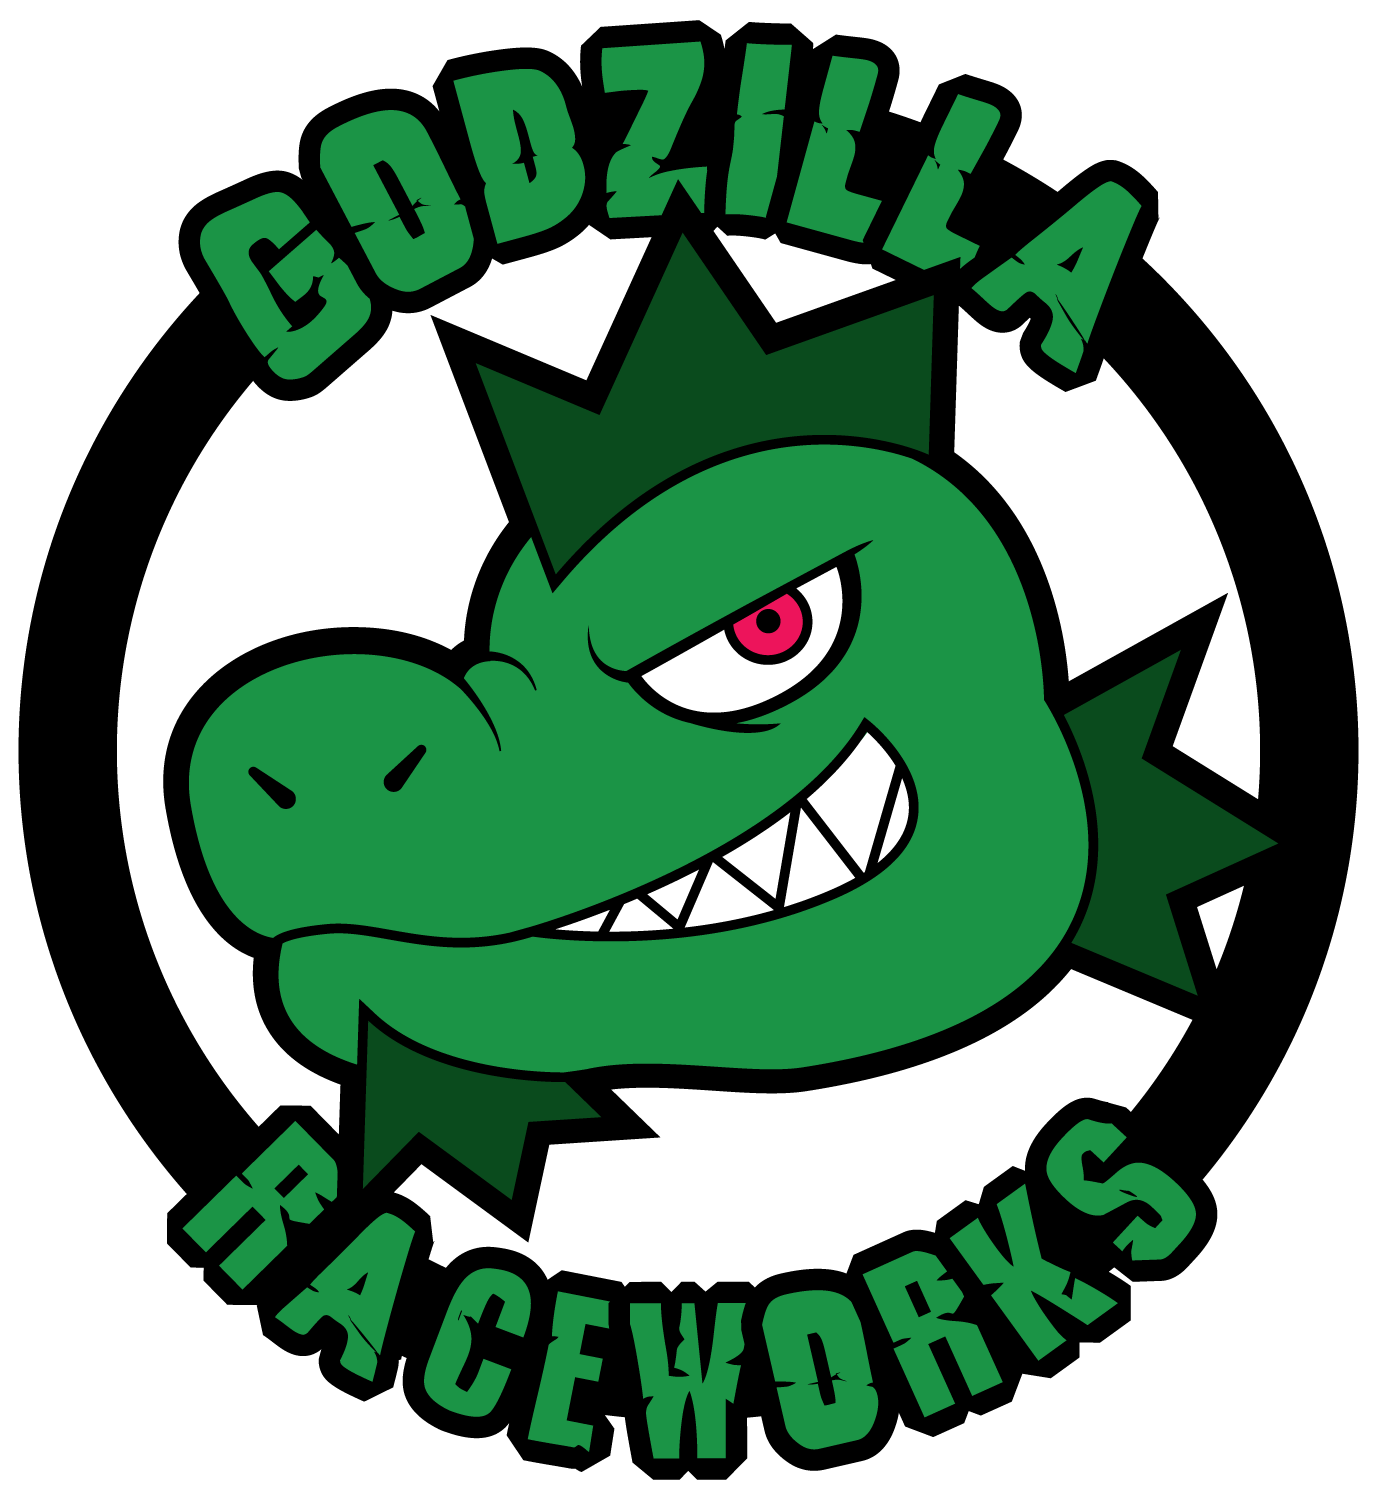 Godzilla Raceworks_Digital